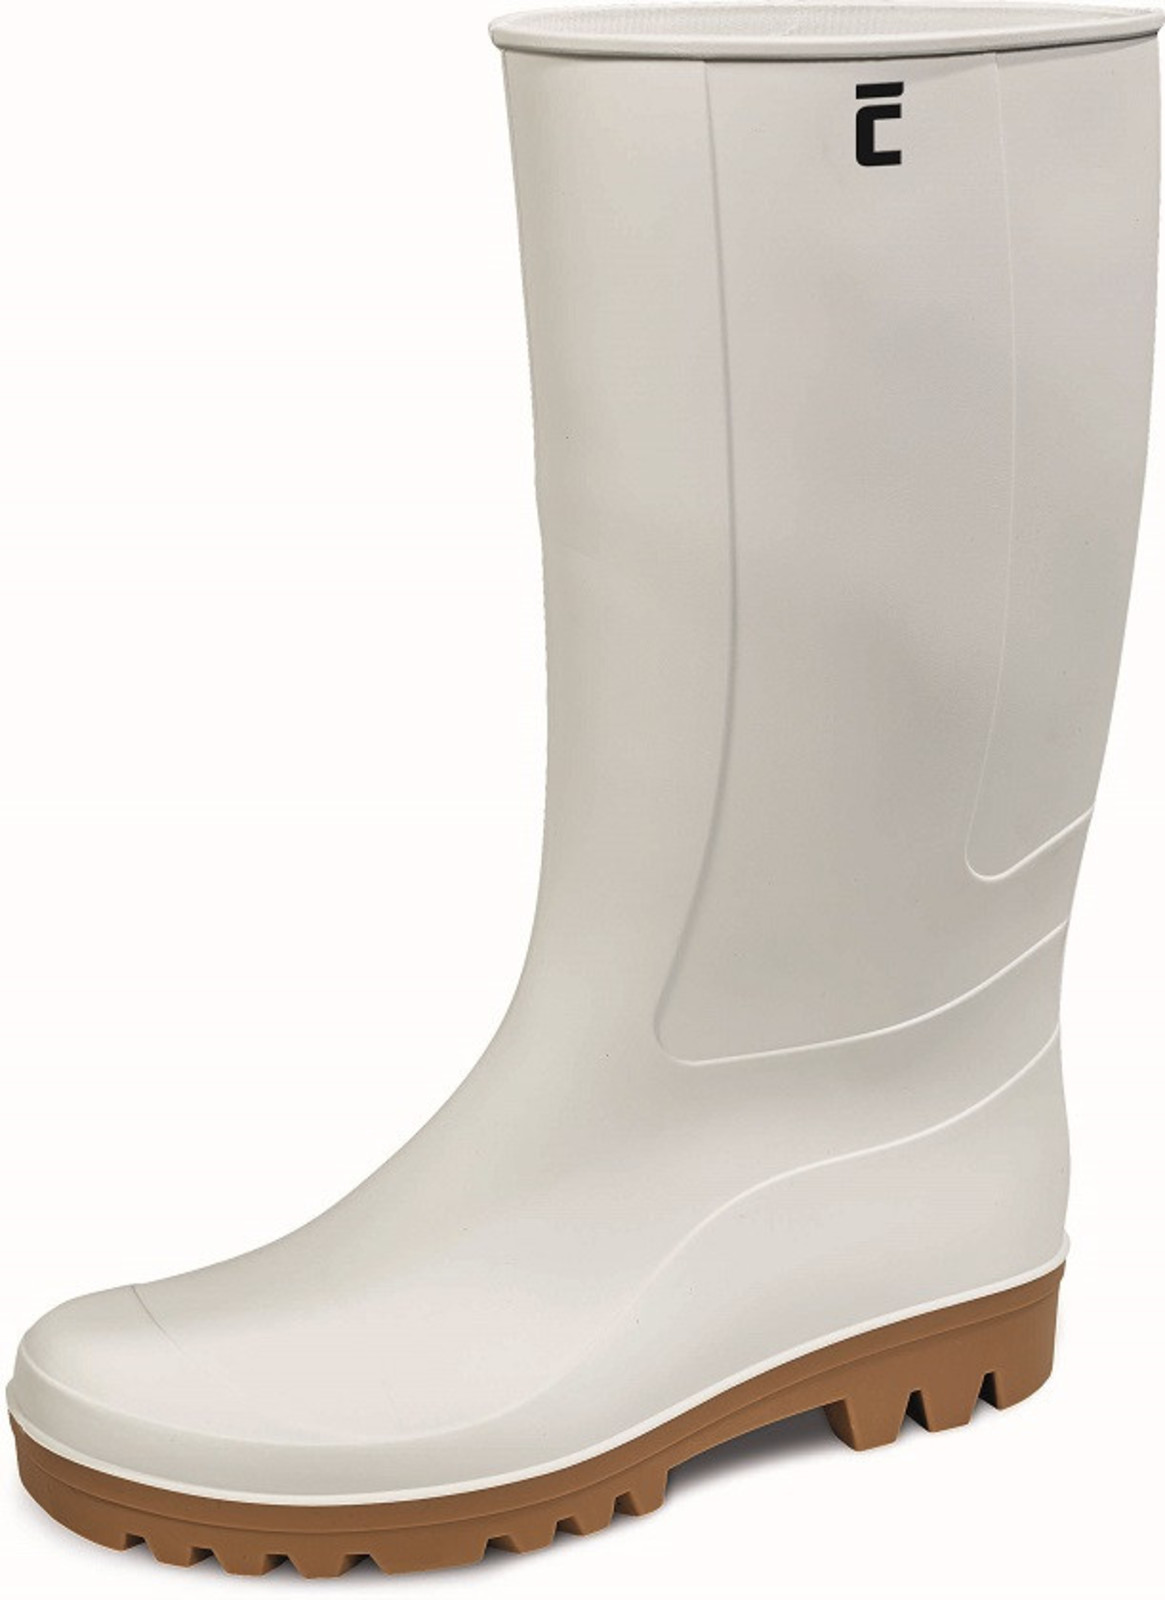 Gumáky Boots BC Food O4  - veľkosť: 40, farba: biela